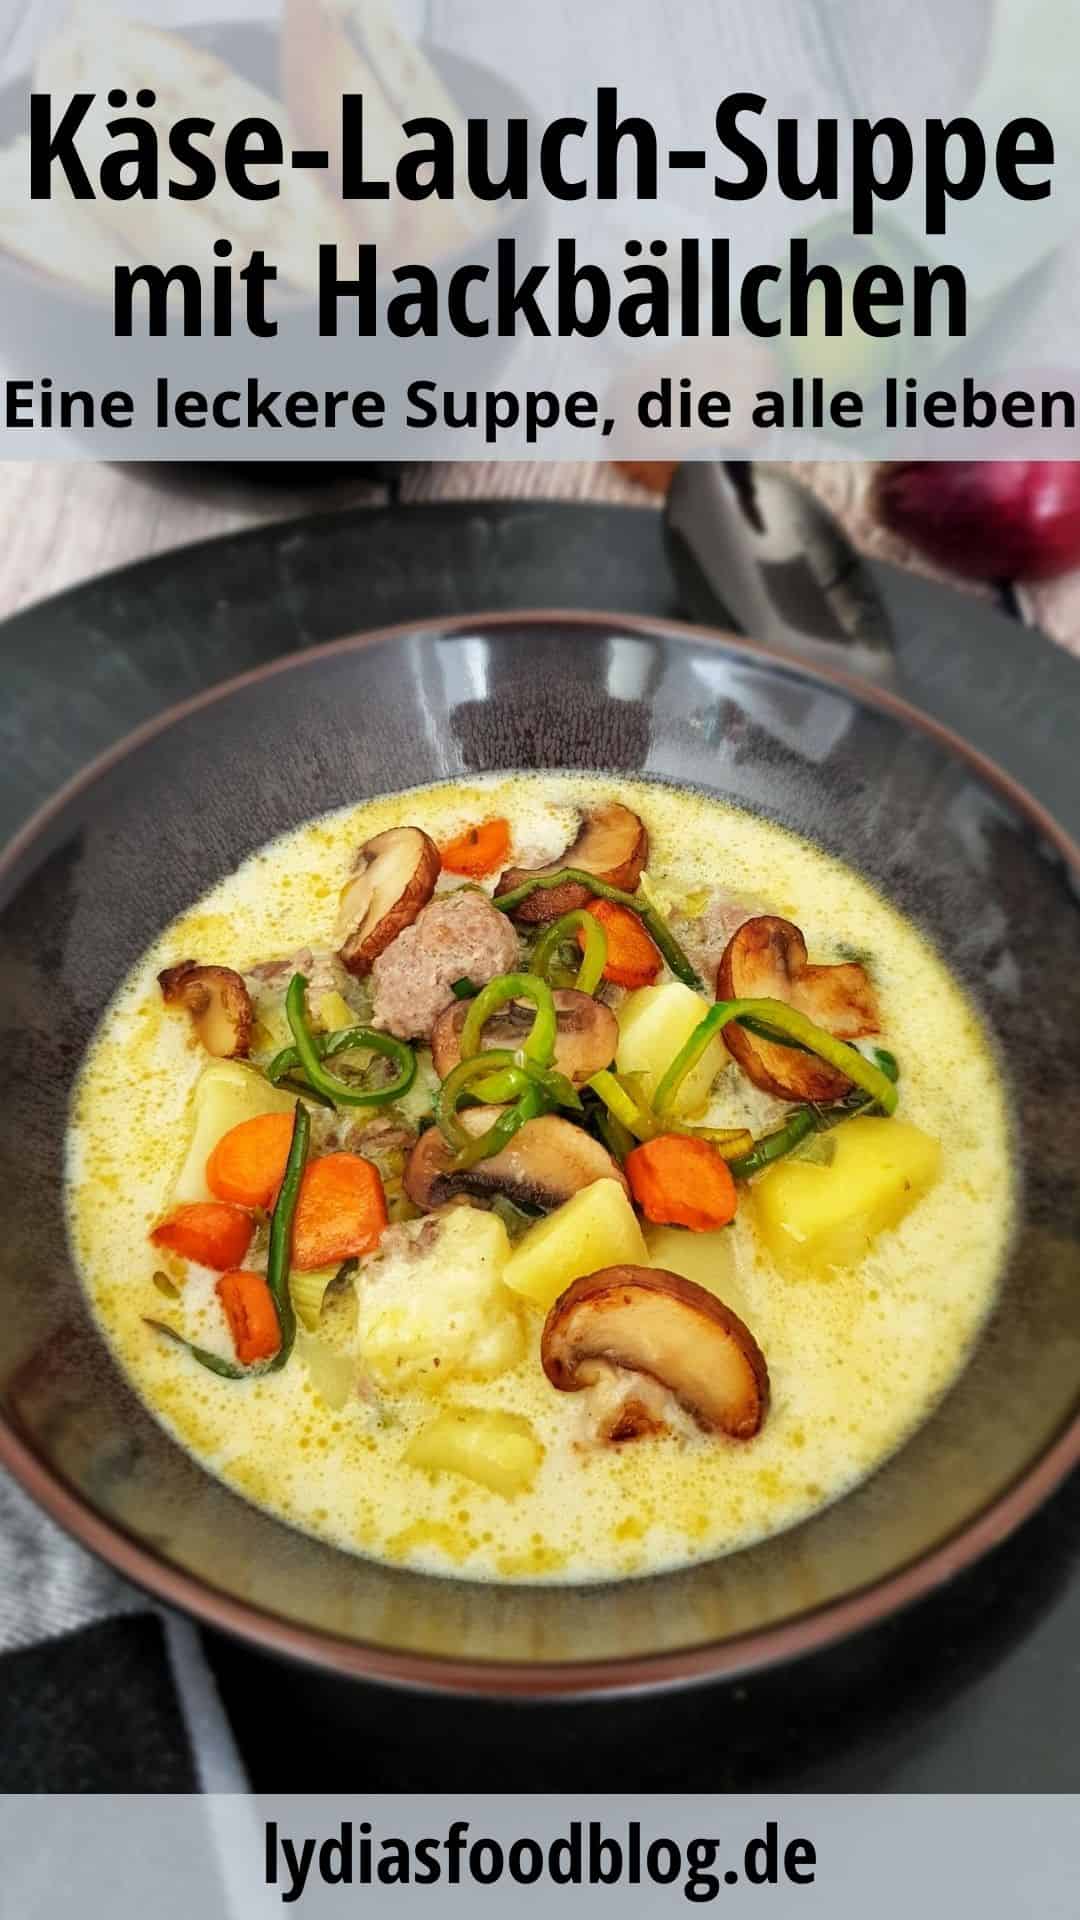 Käse-Lauch-Suppe mit Hackbällchen in einer braunen Suppenschale. Im Hintergrund Deko.